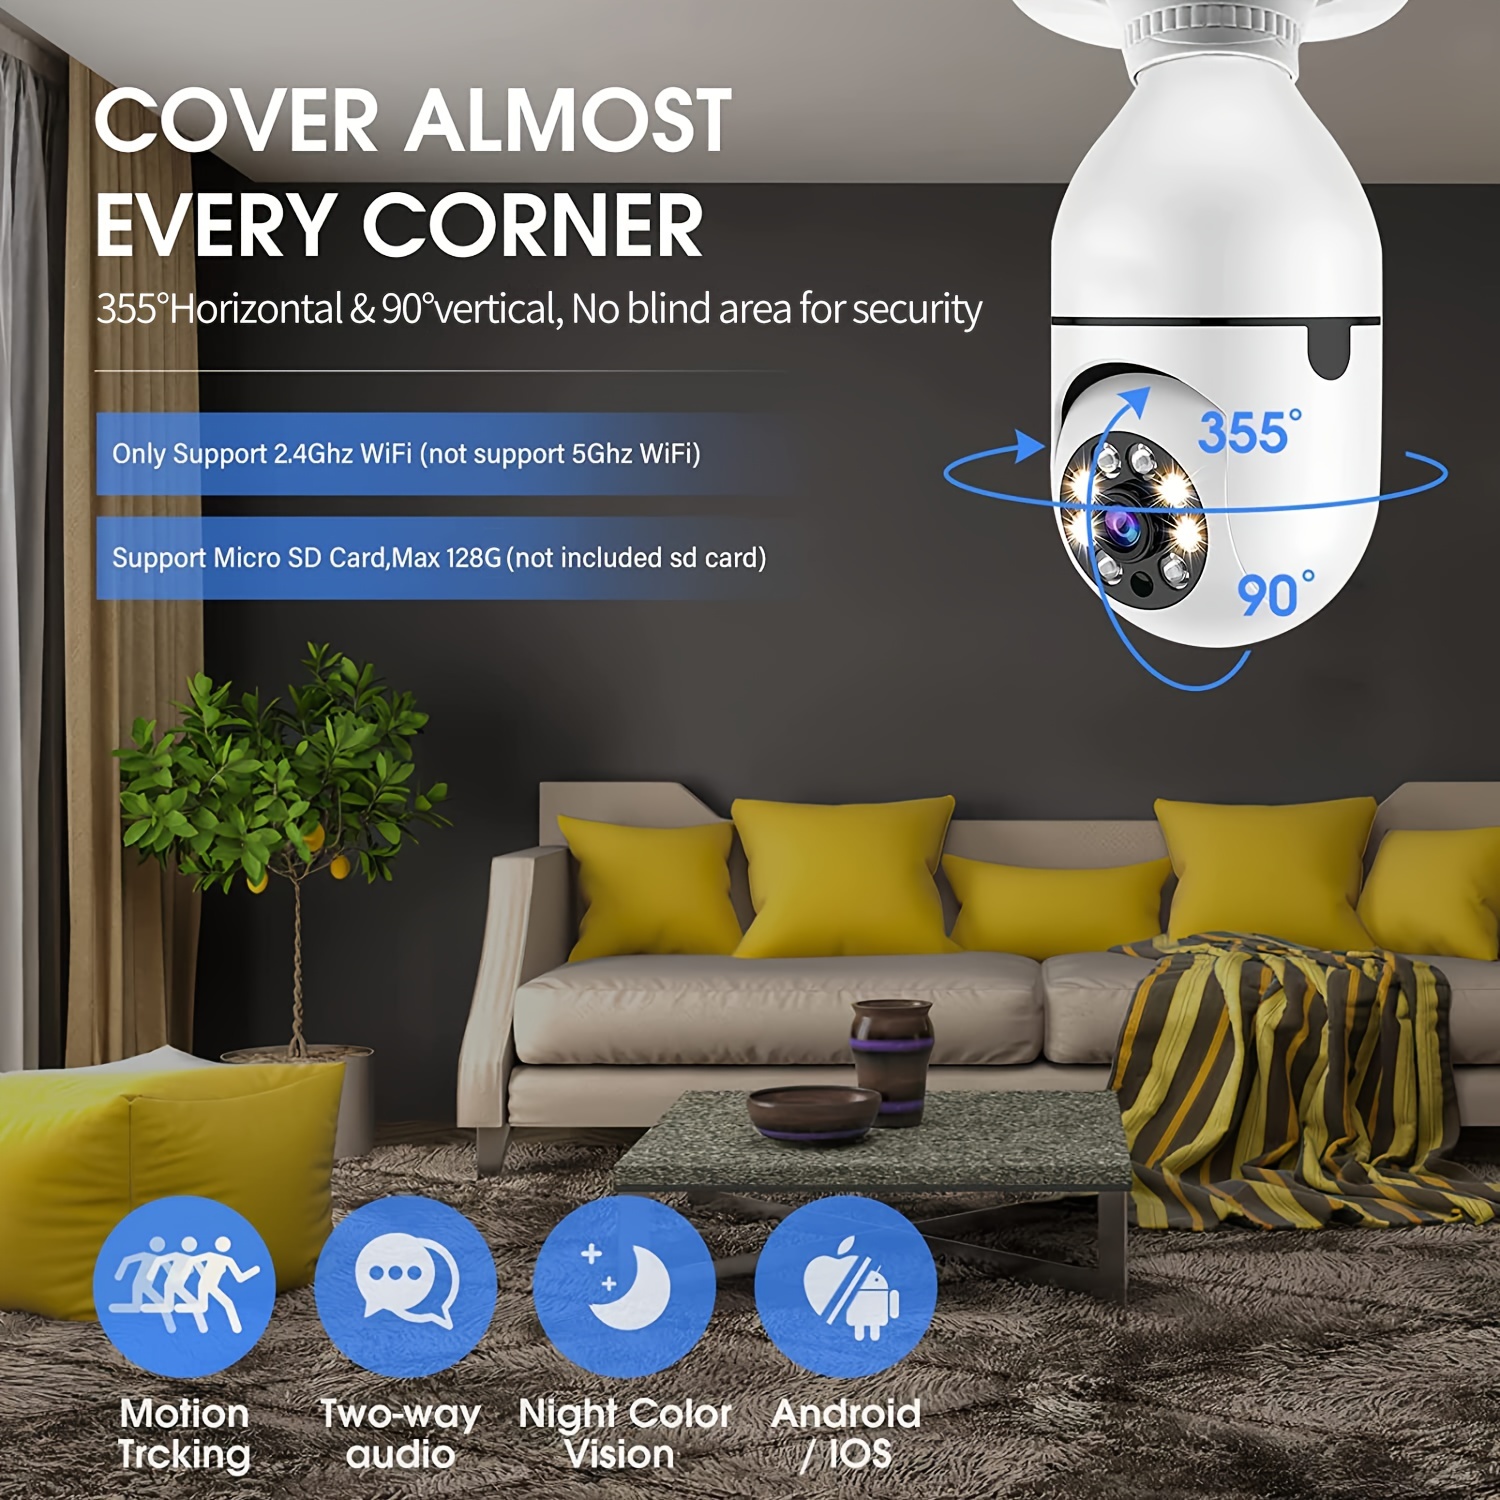 Las mejores cámaras WIFI para el interior - TOP hogar inteligente